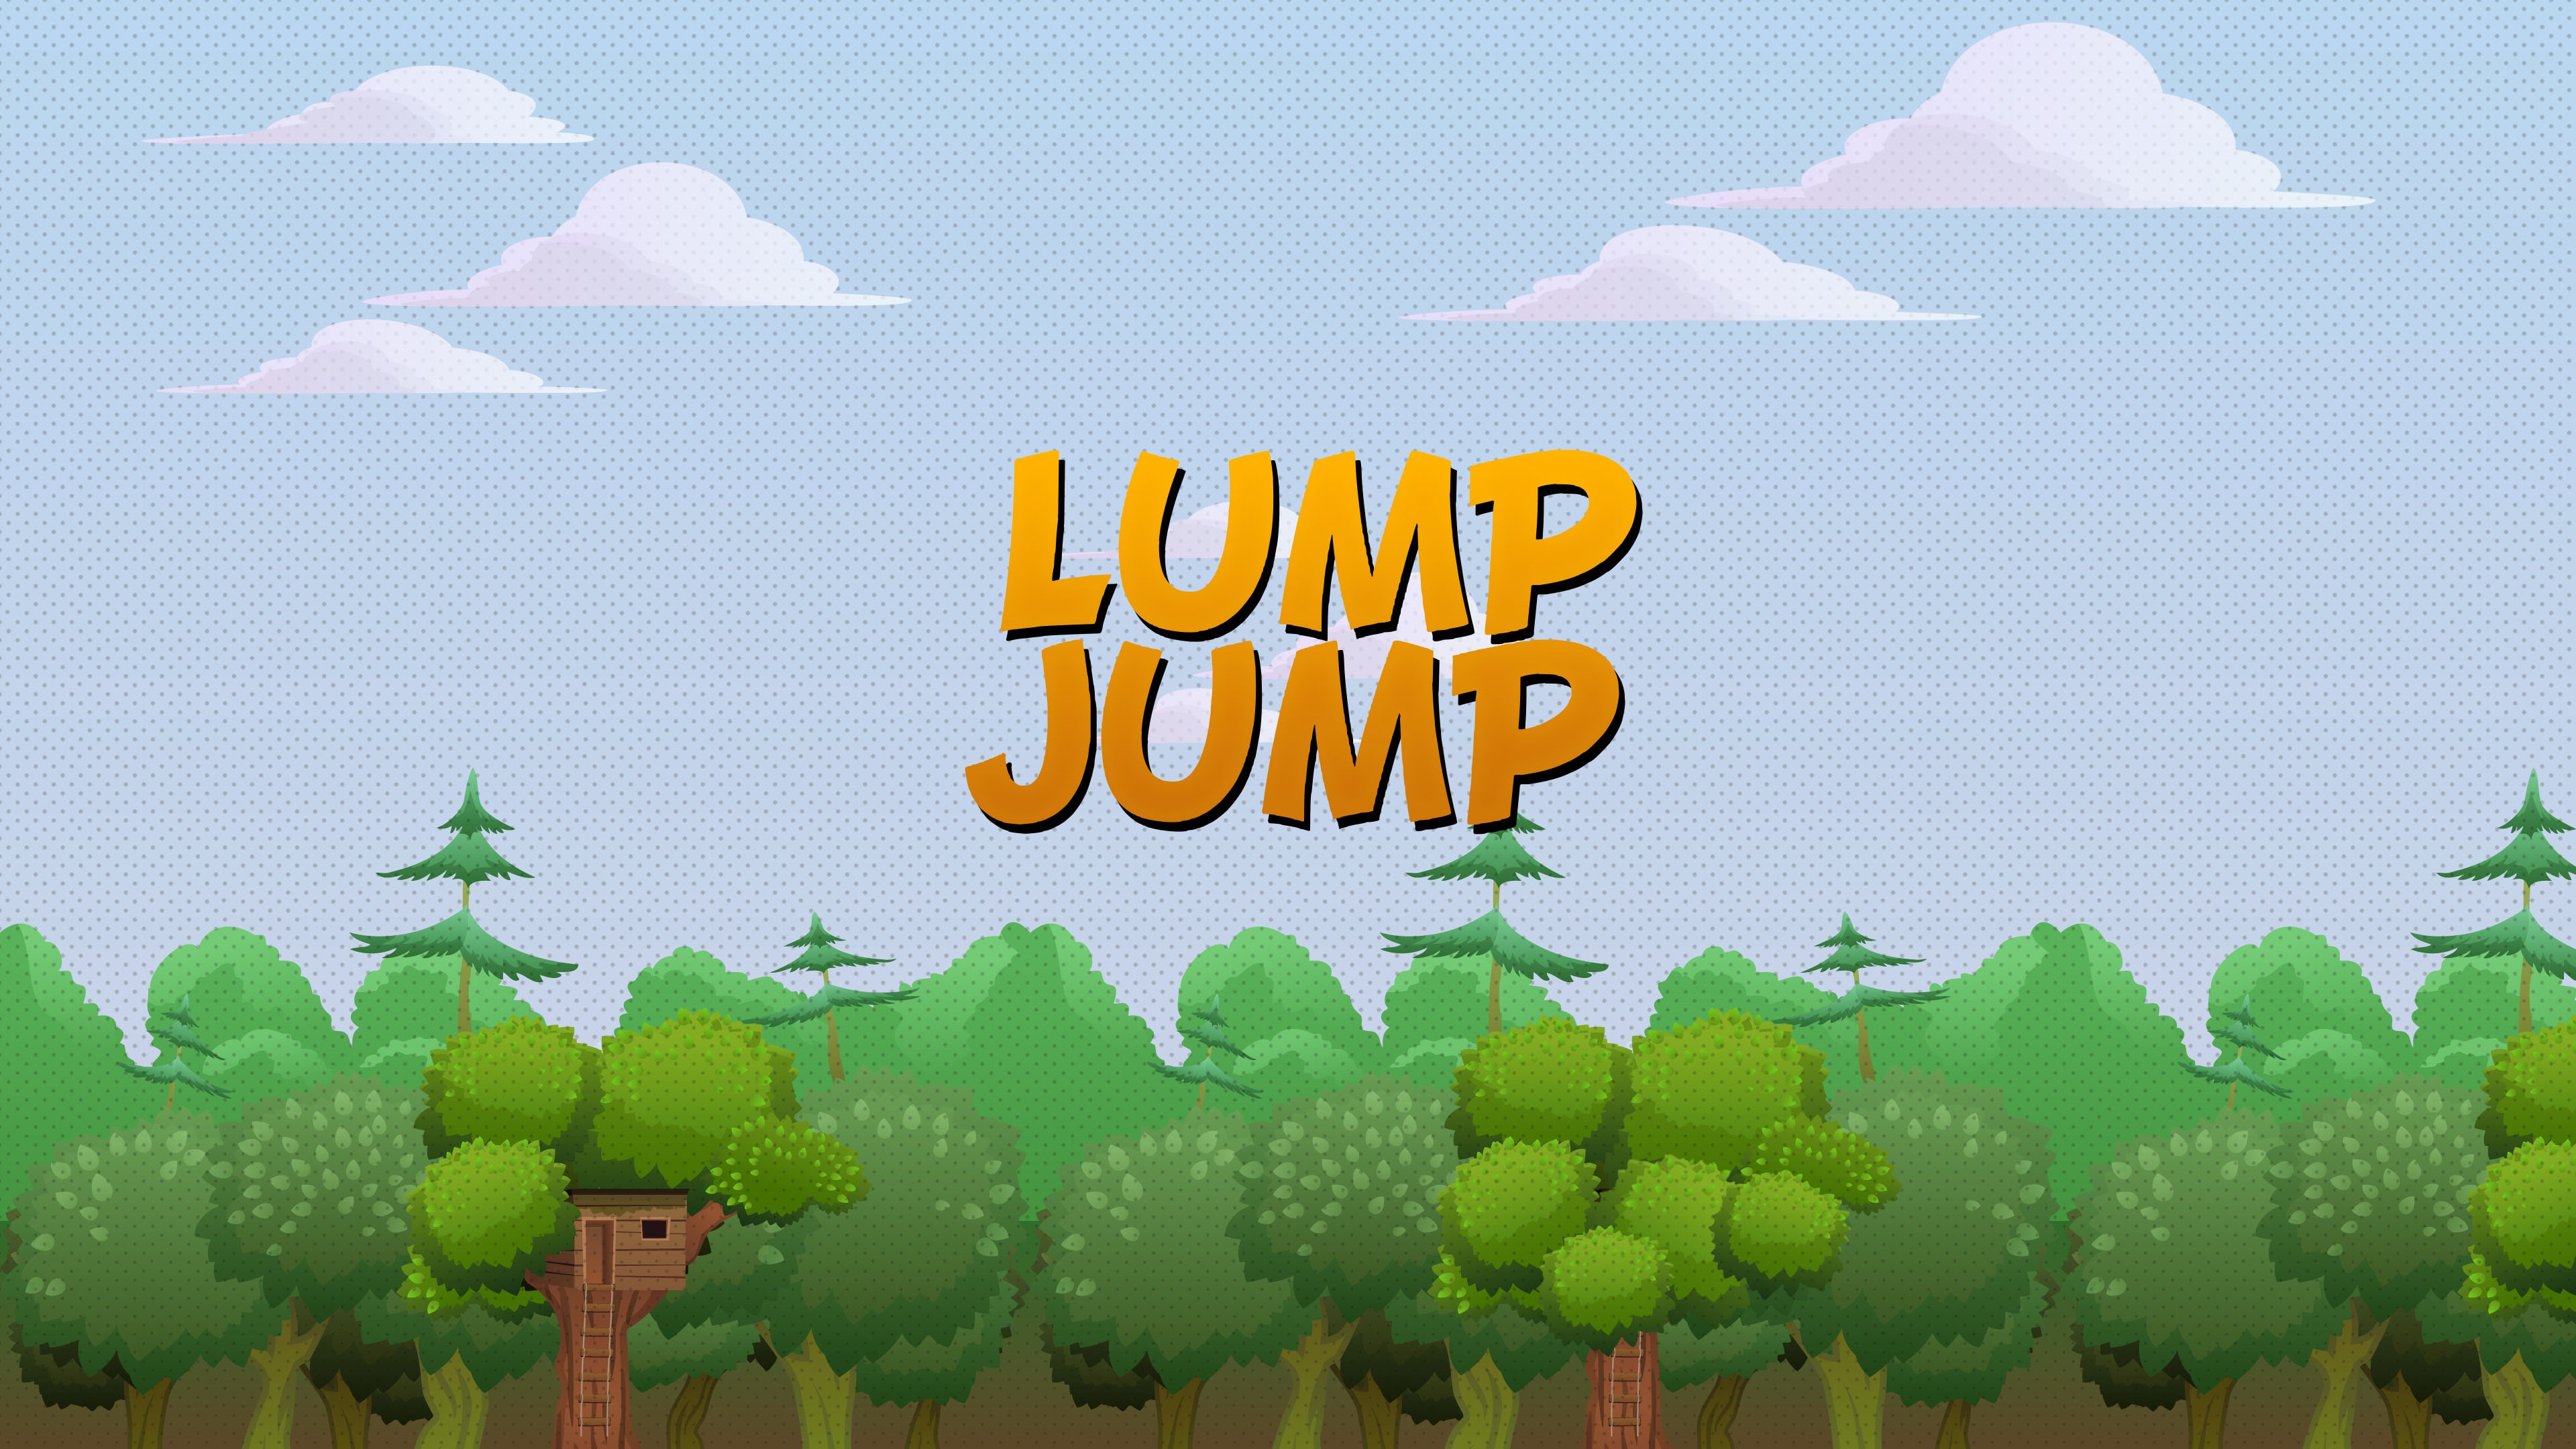 Lump Jump (영어)